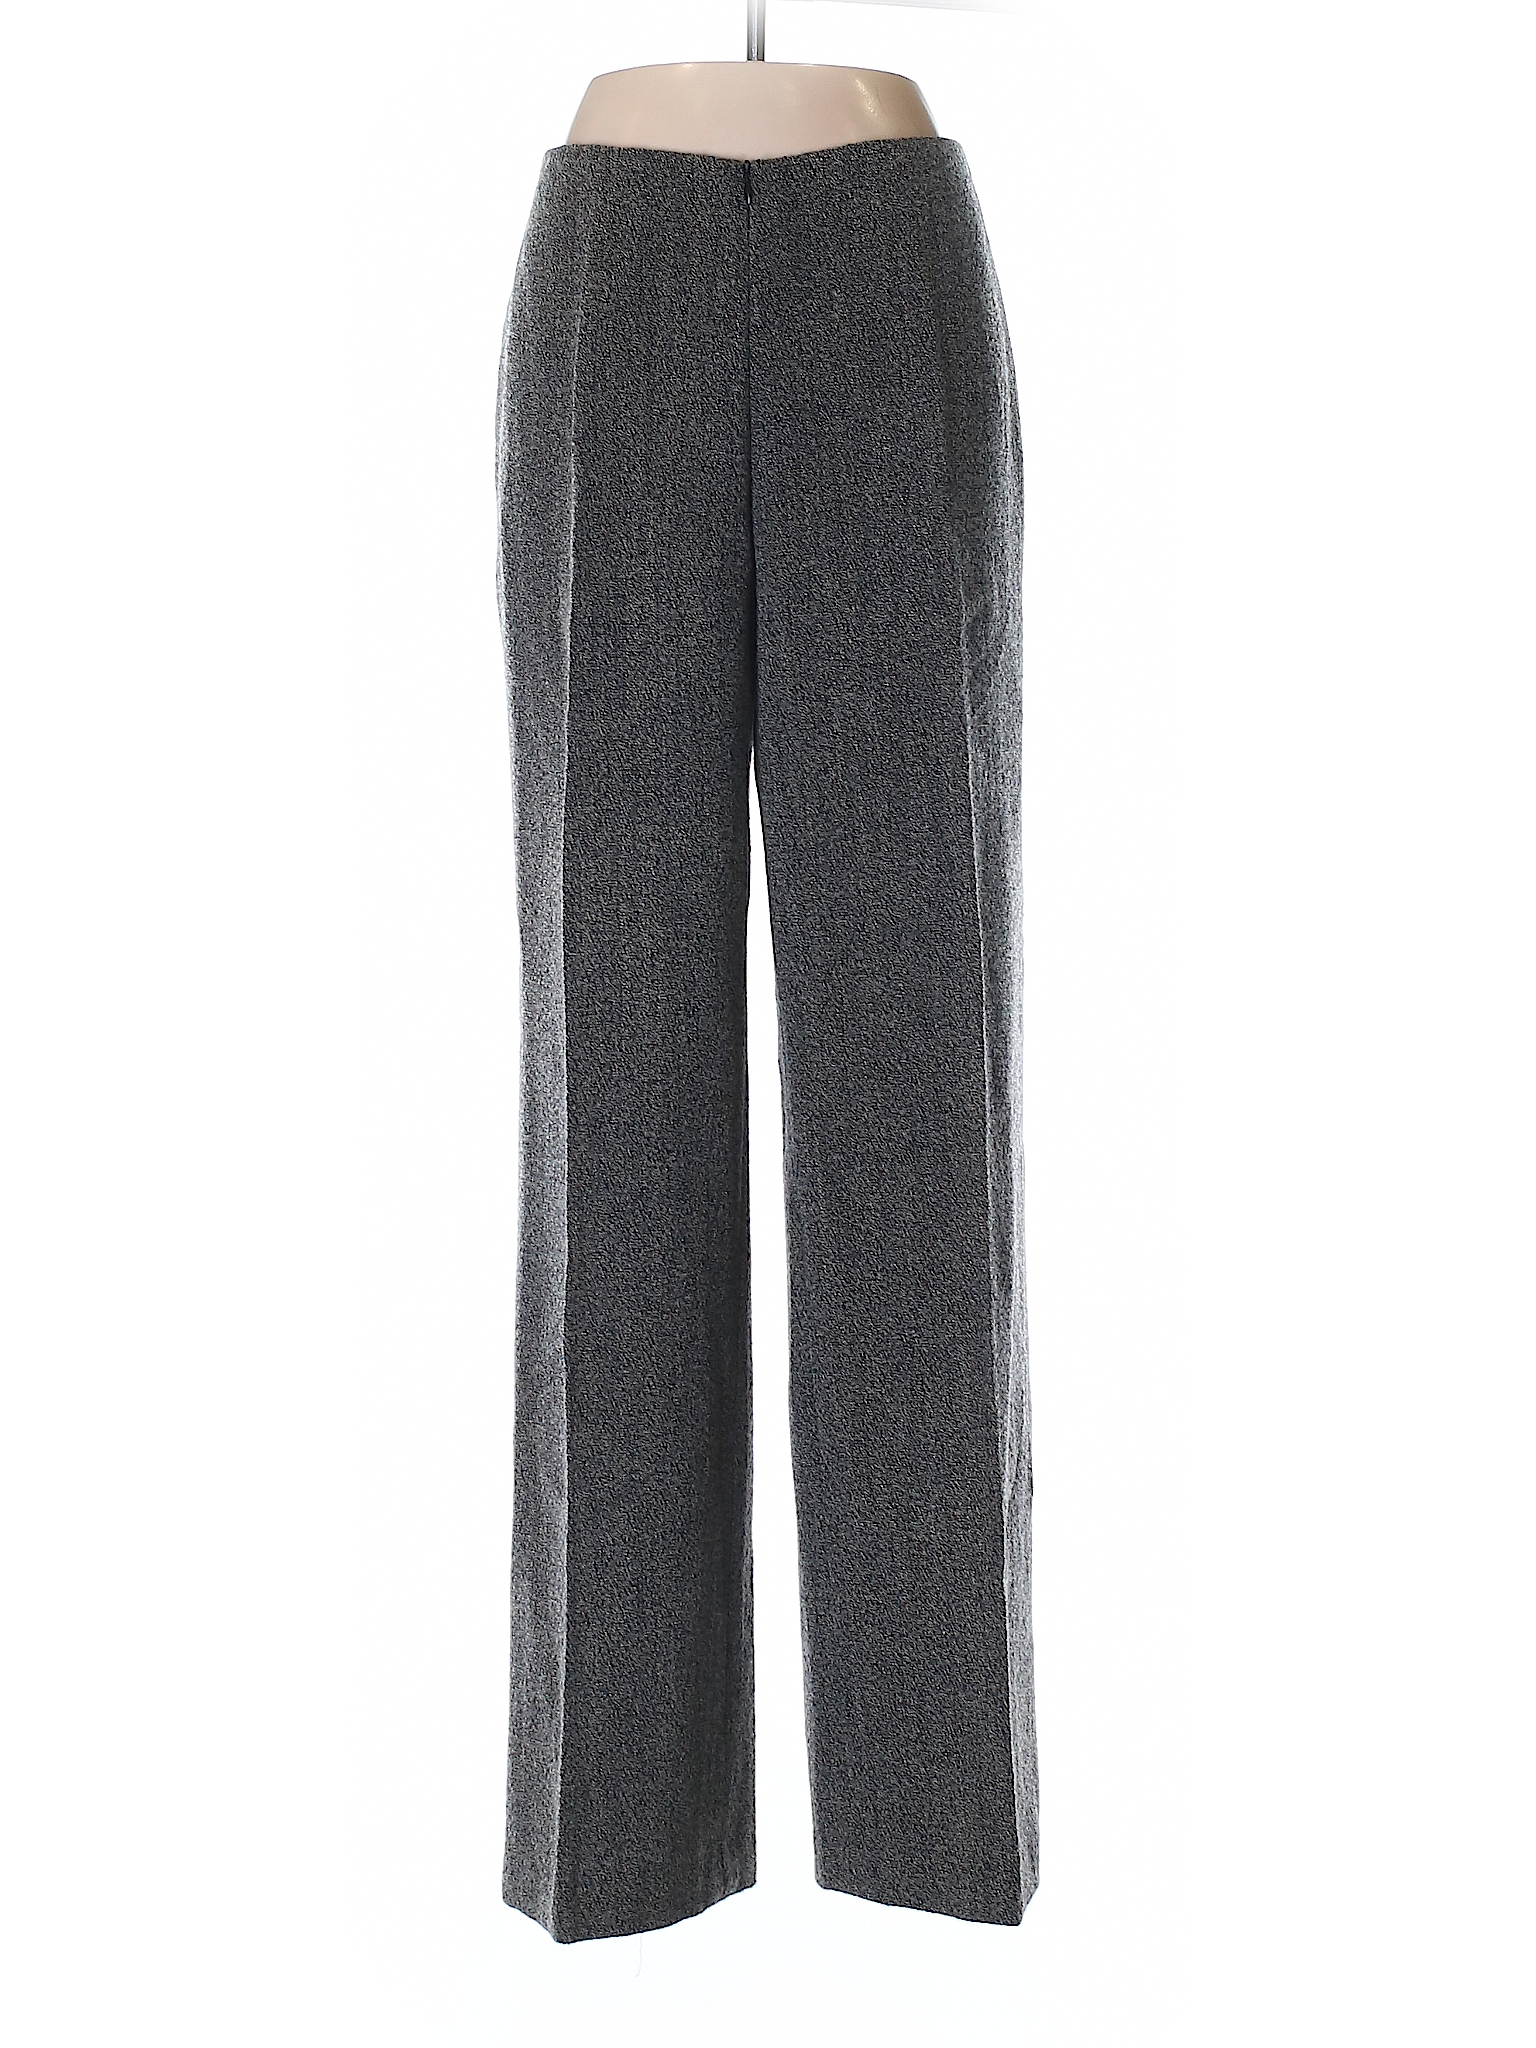 Dries Van Noten Solid Gray Wool Pants Size 42 (IT) - 94% off | thredUP